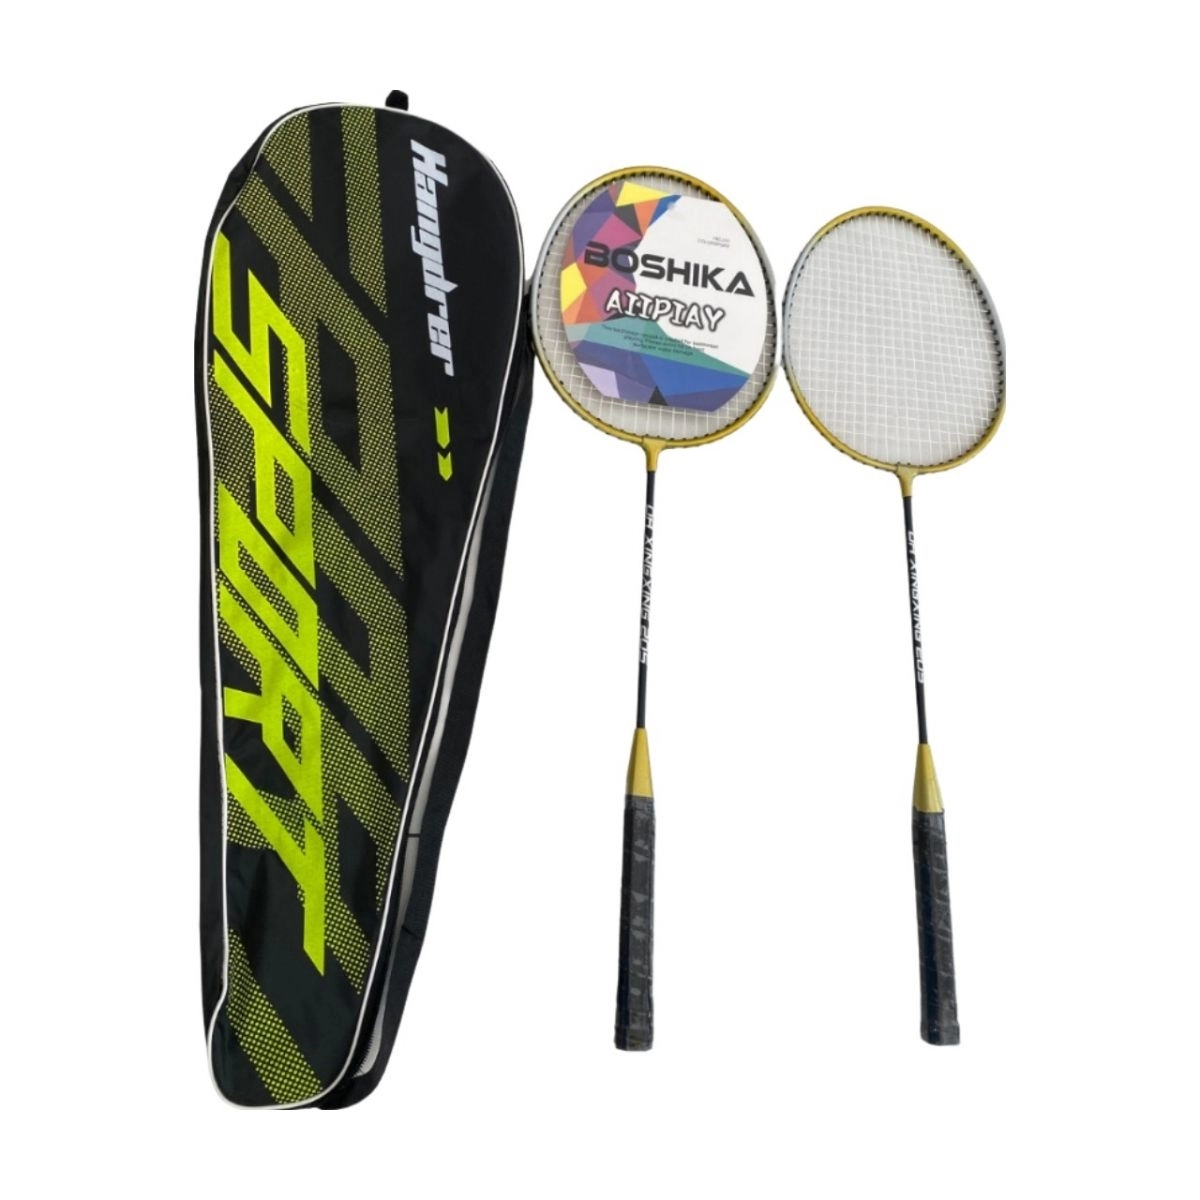 bộ vợt cầu lông Boshika 205